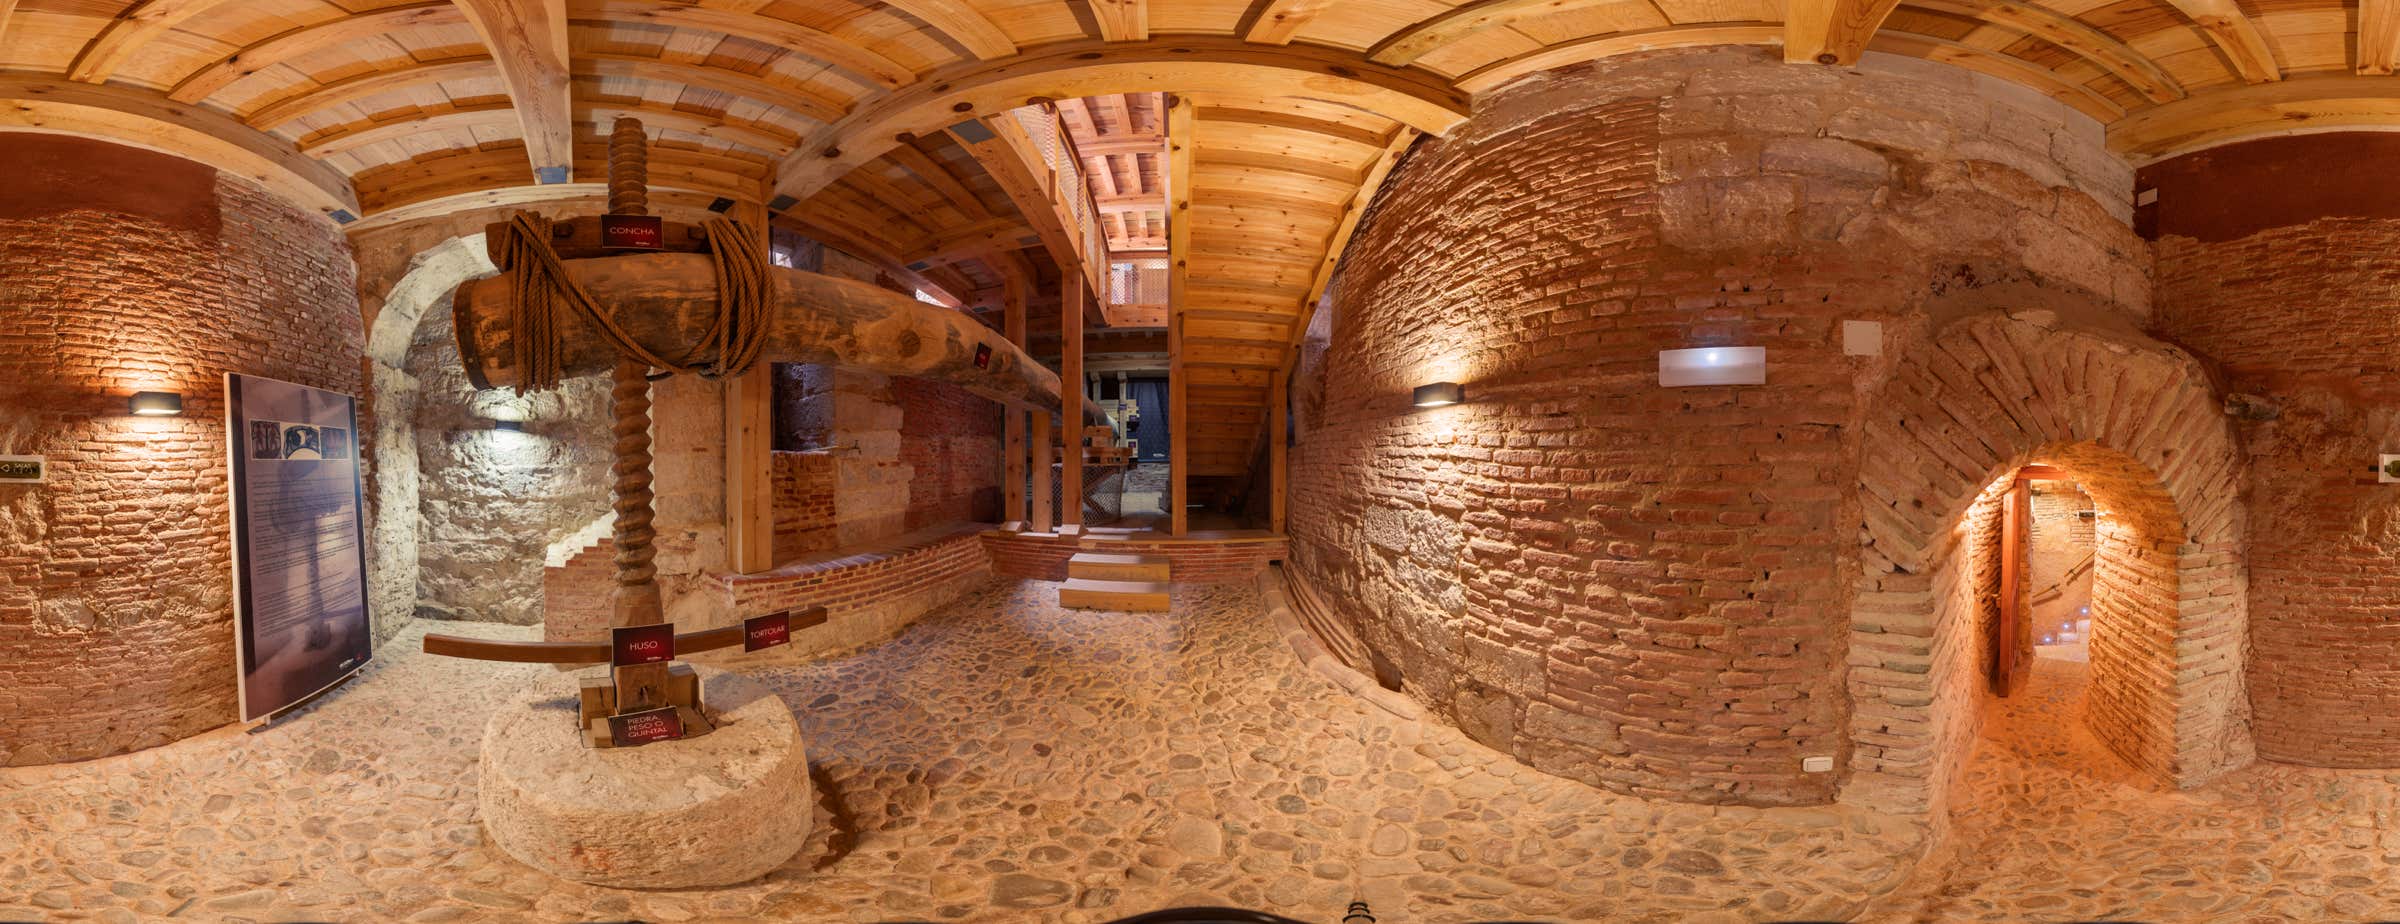 Panoramska slika od 360° unutar muzeja koja prikazuje veliku drvenu prešu koja se koristila za cijeđenje soka iz grožđa.